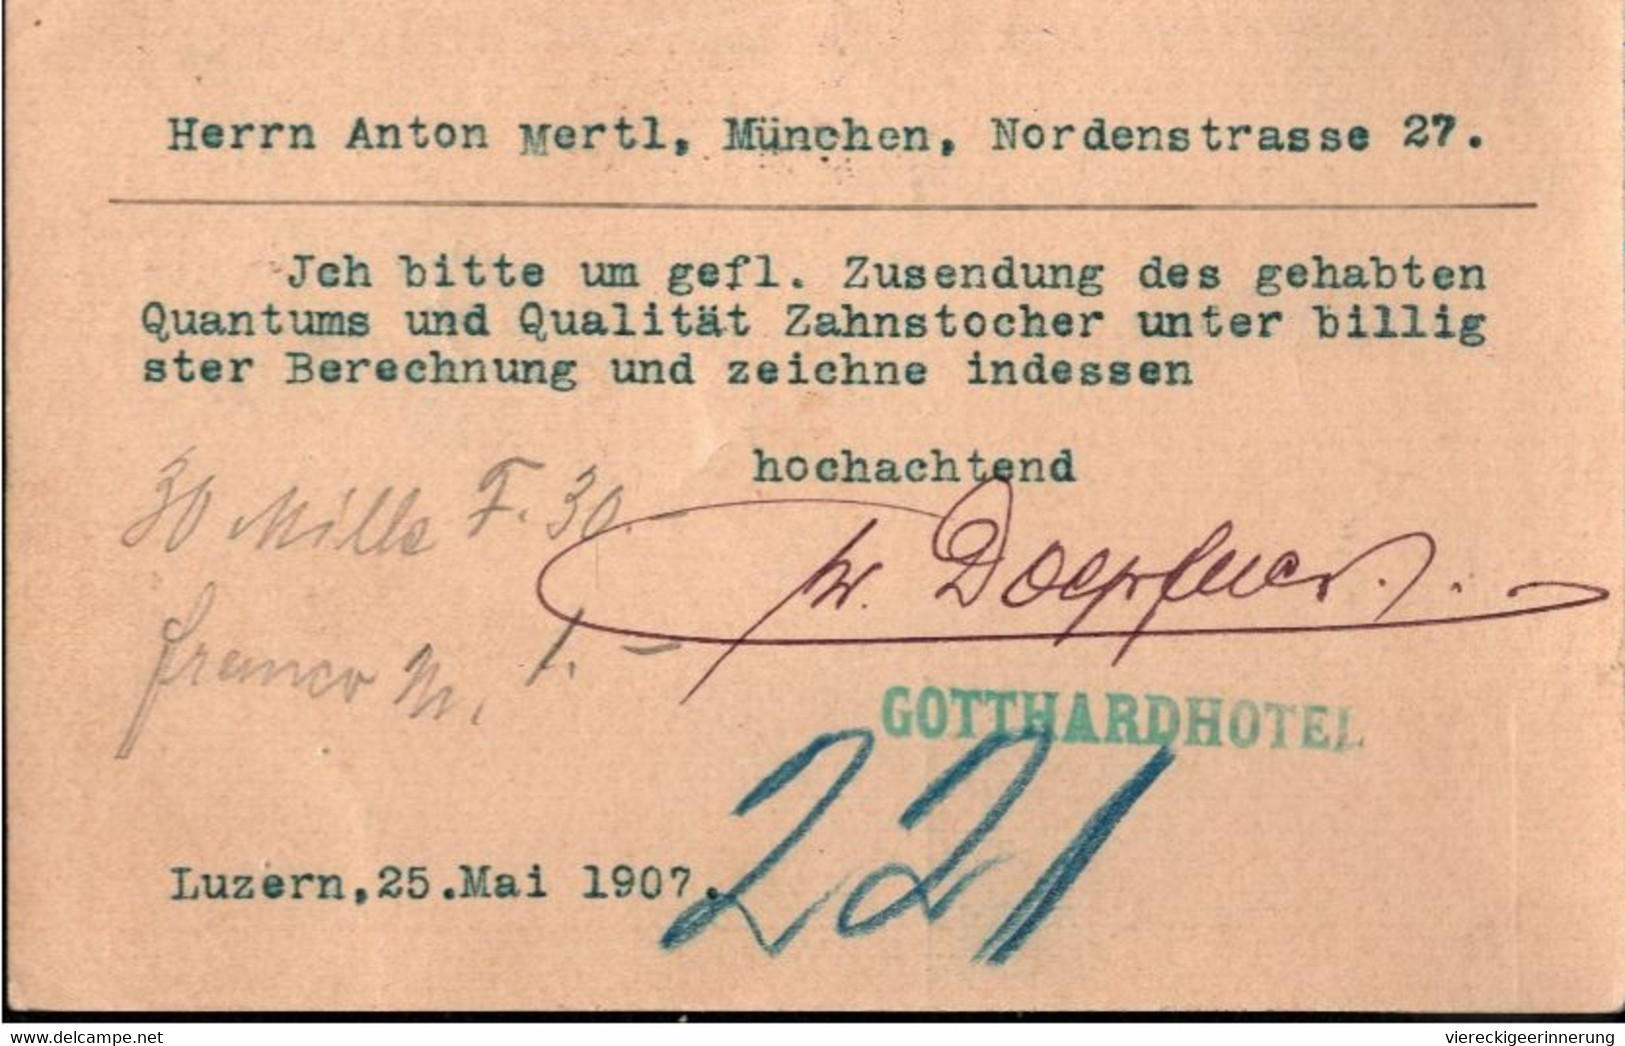 ! Lot von 6 Ganzsachen aus Luzern, Schweiz, 1902-1907, u.a. Abs. Stempel Hotel St. Gotthard, Bestellung für Zahnstocher